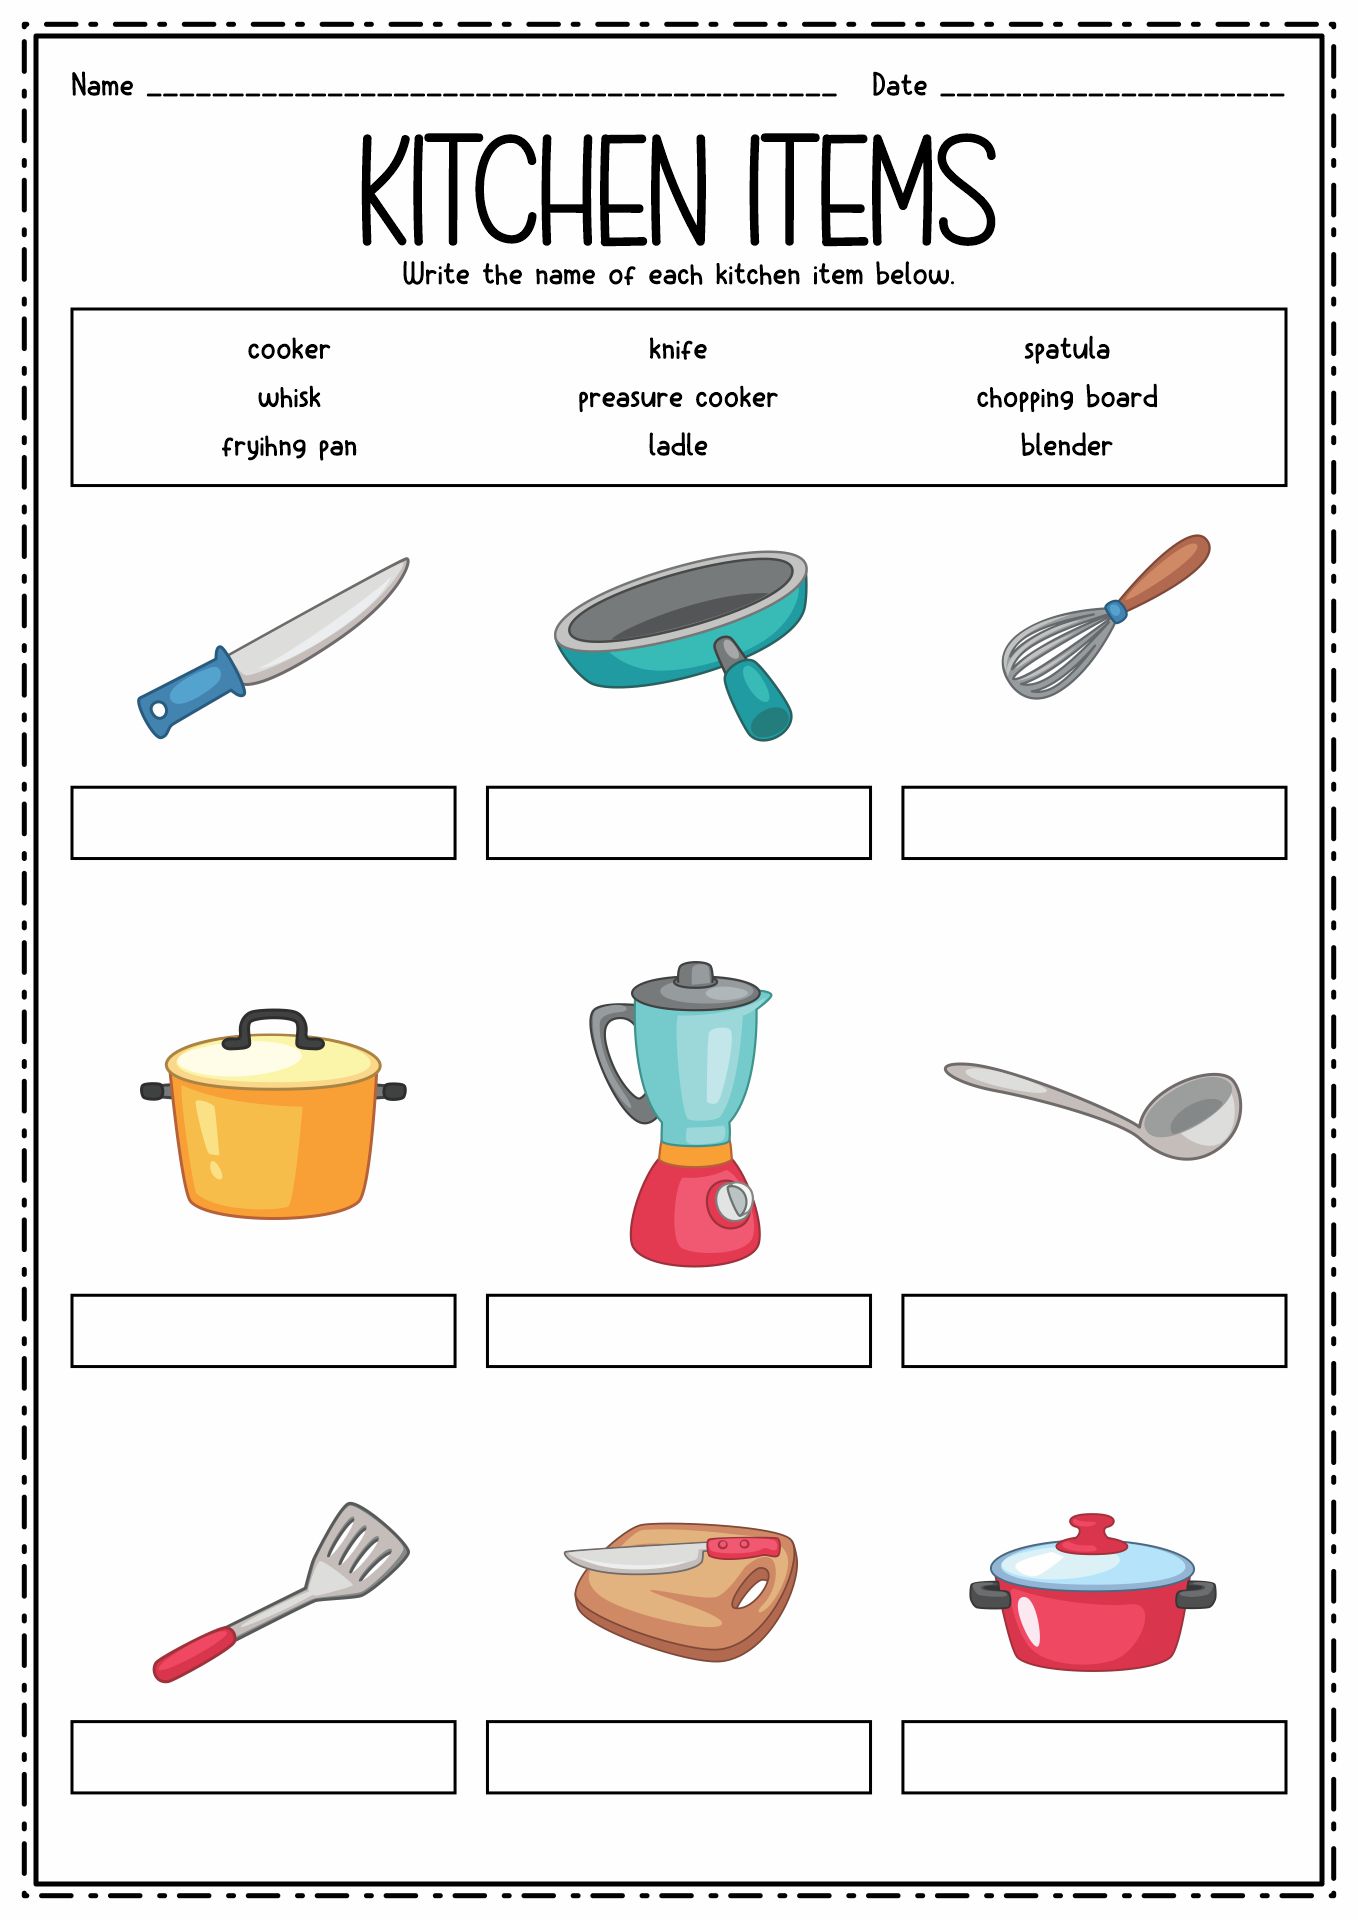 9-kitchen-utensils-worksheet-for-kids-worksheeto